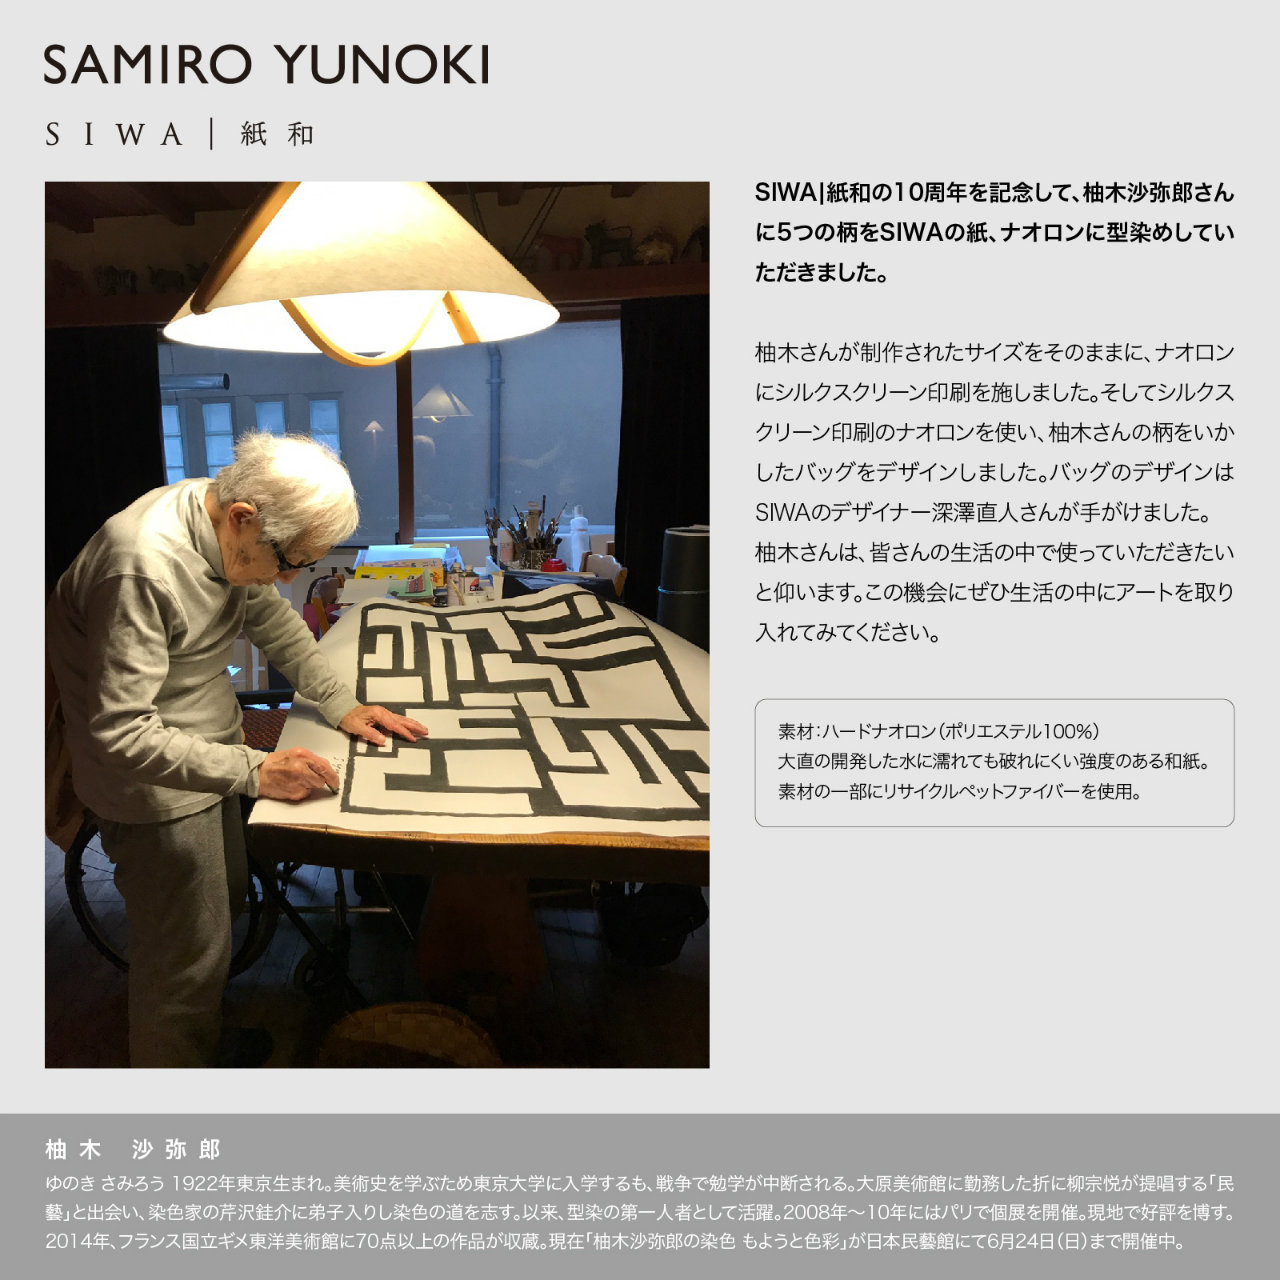 SAMIRO YUNOKI SIWA バッグ フラット横ファスナー付 04ブラック（柚木 沙弥郎 紙和）